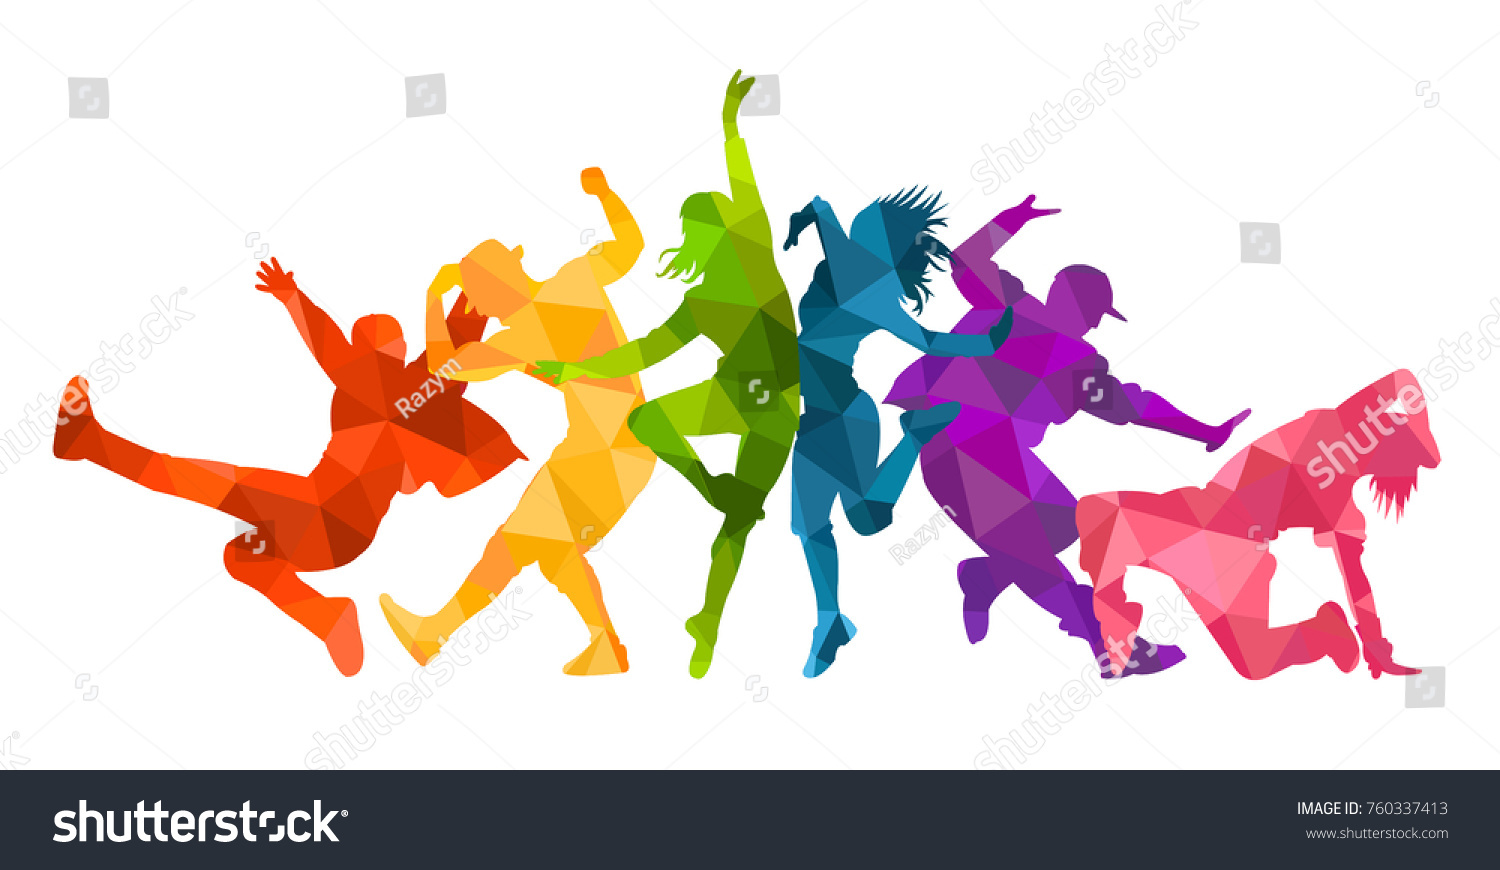 人が踊る表情豊かな踊りのシルエットが 細かいベクターイラストで描かれています ジャズファンク ヒップホップ ハウスダンス の文字 ダンサー のベクター画像素材 ロイヤリティフリー